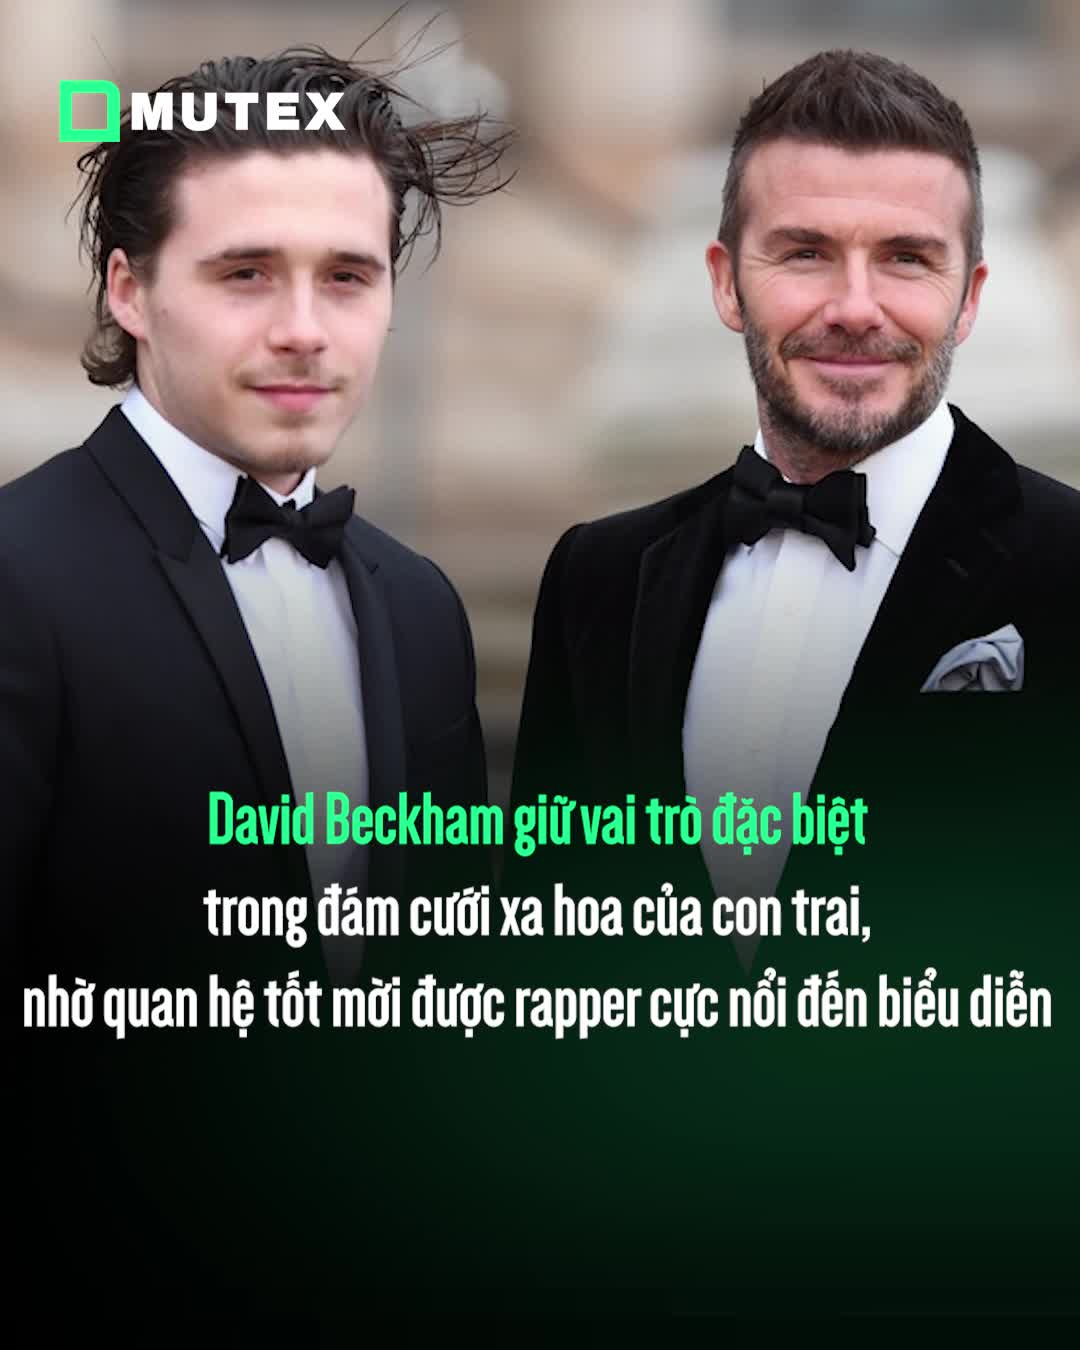 David Beckham giữ vai trò đặc biệt trong đám cưới xa hoa của con trai, nhờ quan hệ tốt mời được rapper cực nổi đến biểu diễn